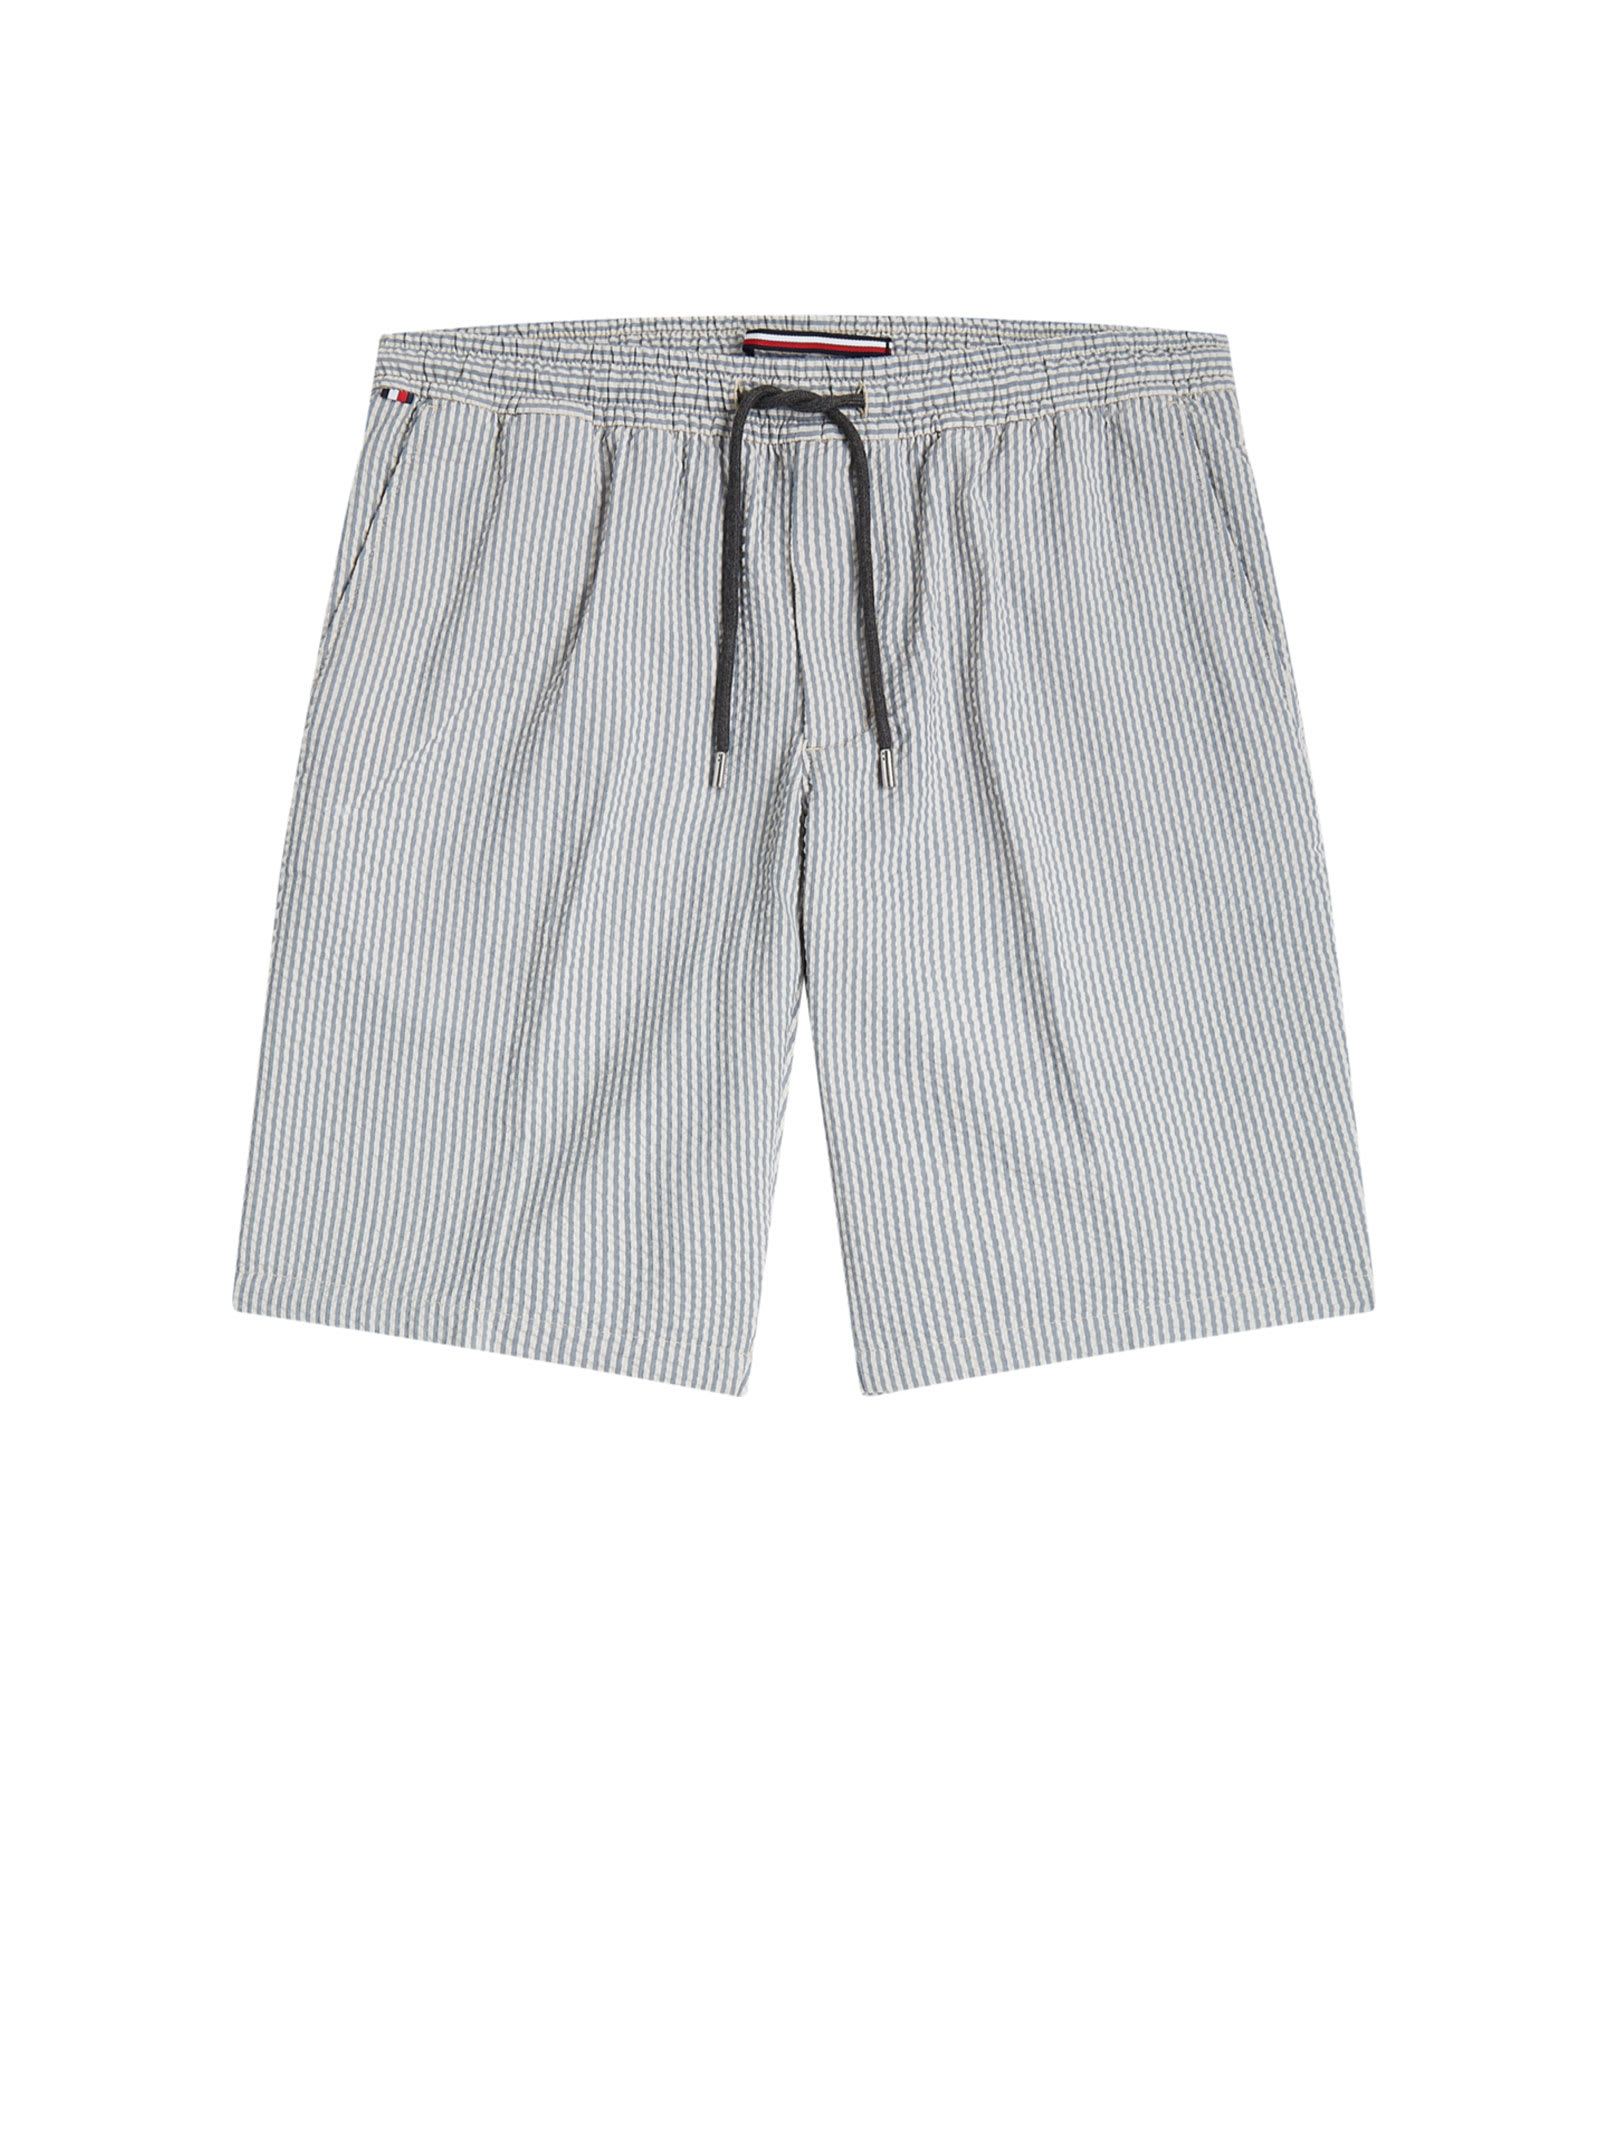 Tommy Hilfiger Gray Seersucker Bermuda Shorts